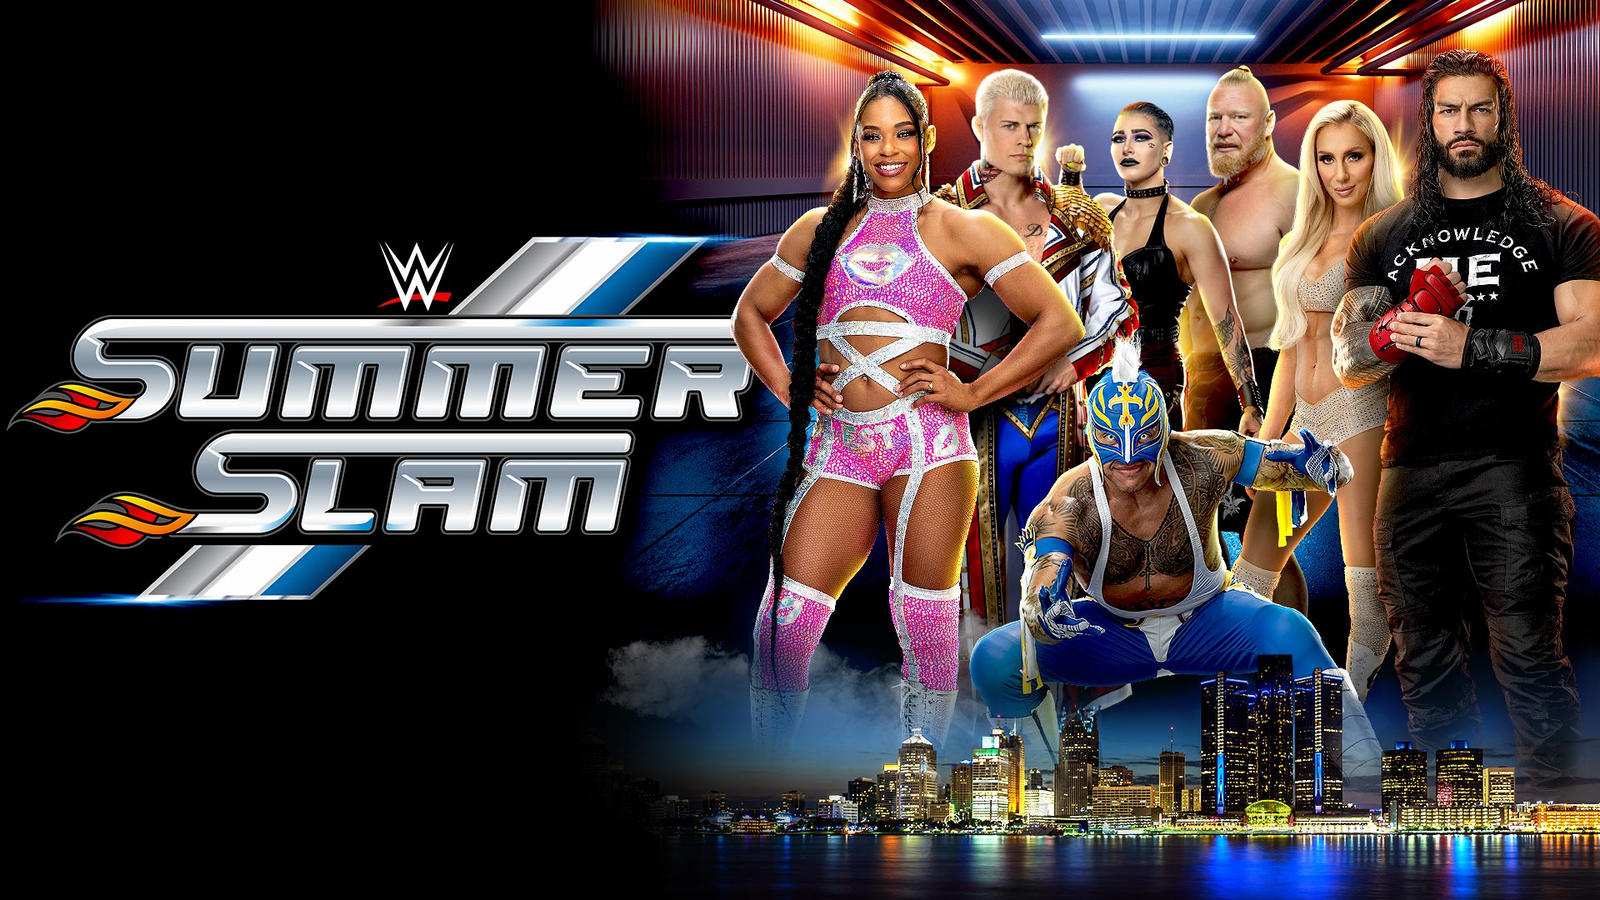 Потенциальный спойлер титульного матча на SummerSlam; WWE готовят поединок с большим условием?